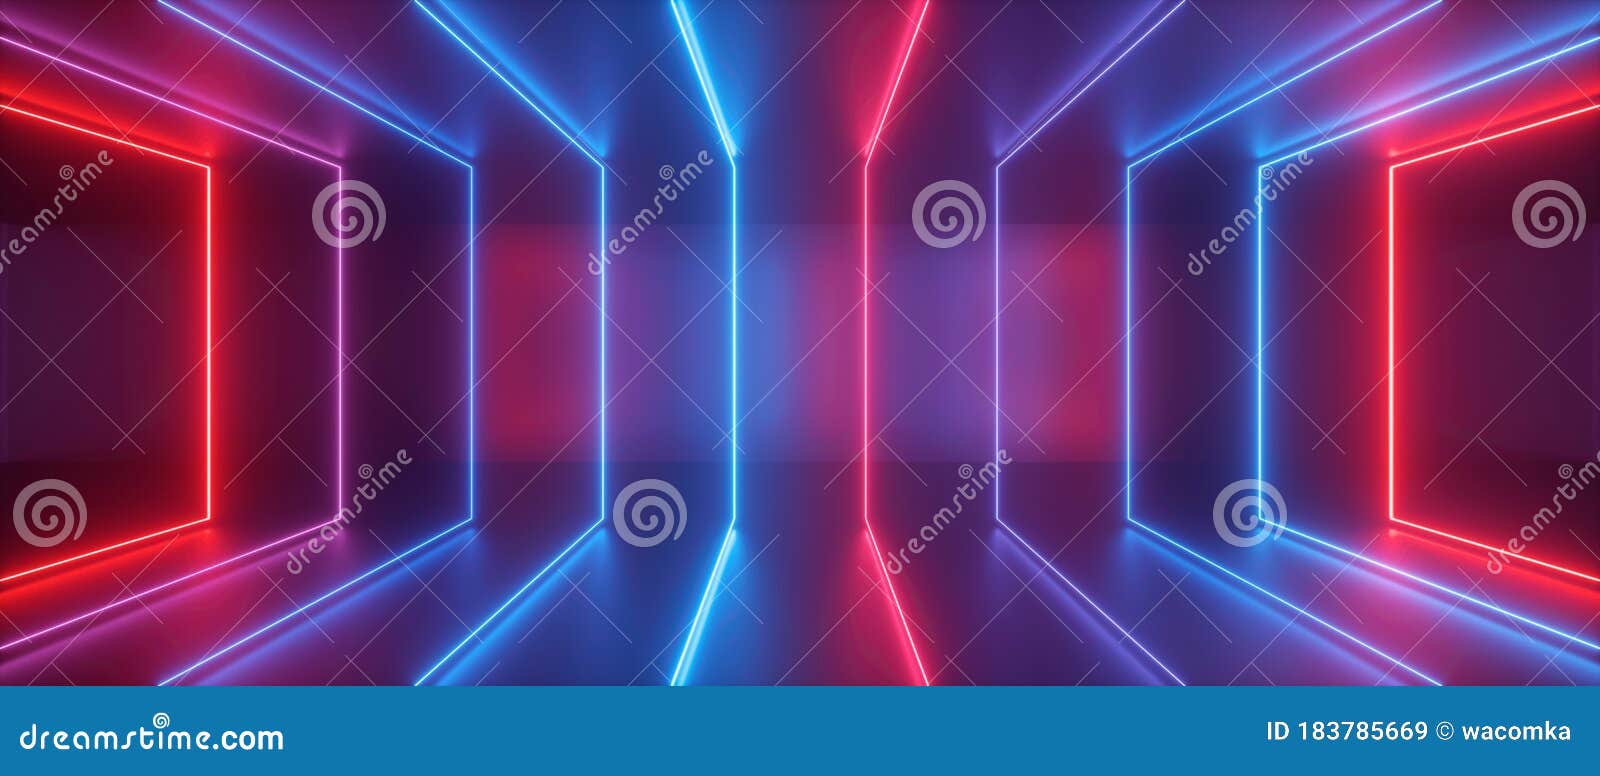 Hình nền ánh sáng neon trừu tượng 3D, khung vuông màu xanh đỏ sẽ khiến bạn bị mê hoặc từ cái nhìn đầu tiên. Bạn sẽ tìm thấy sự mới mẻ và độc đáo trong những hình ảnh này. Hãy để chúng tôi mang đến cho bạn những điều tuyệt vời nhất.